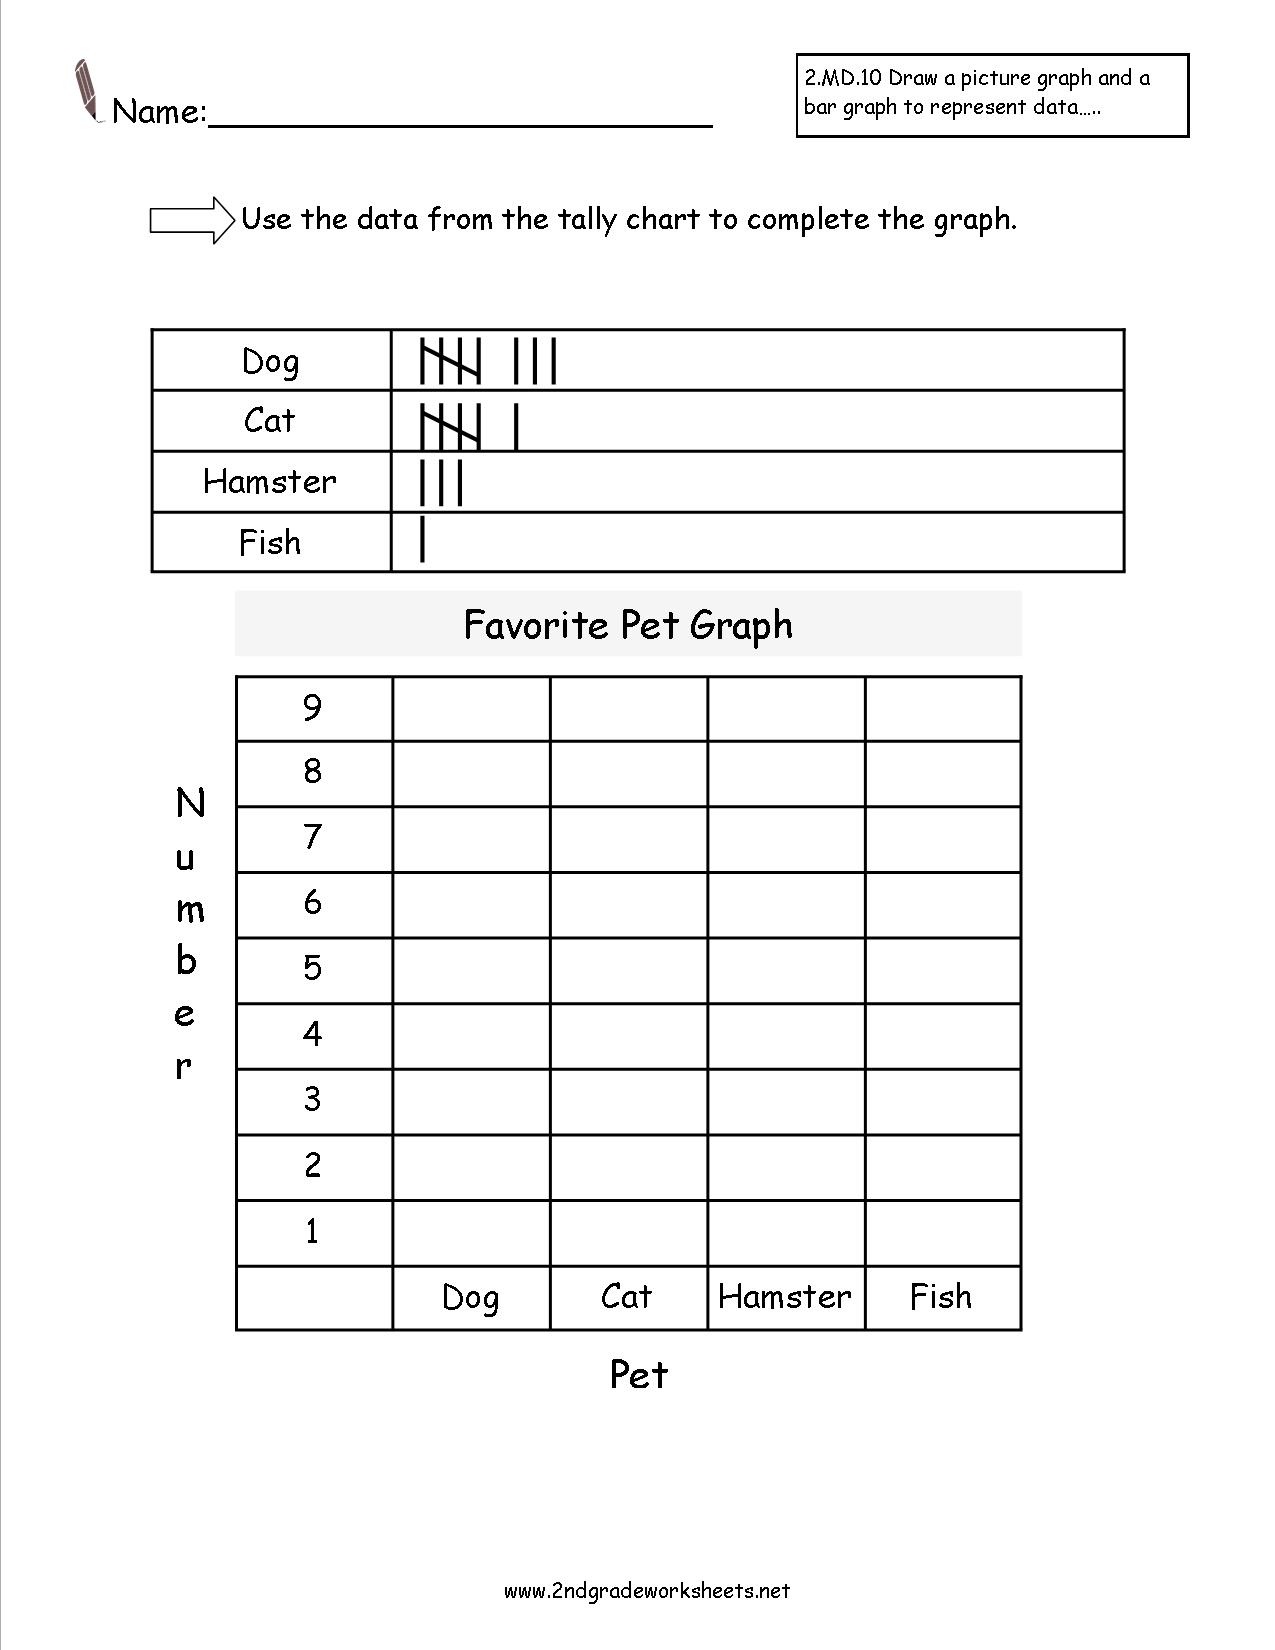 Free Reading And Creating Bar Graph Worksheets - Free Printable Bar Graph